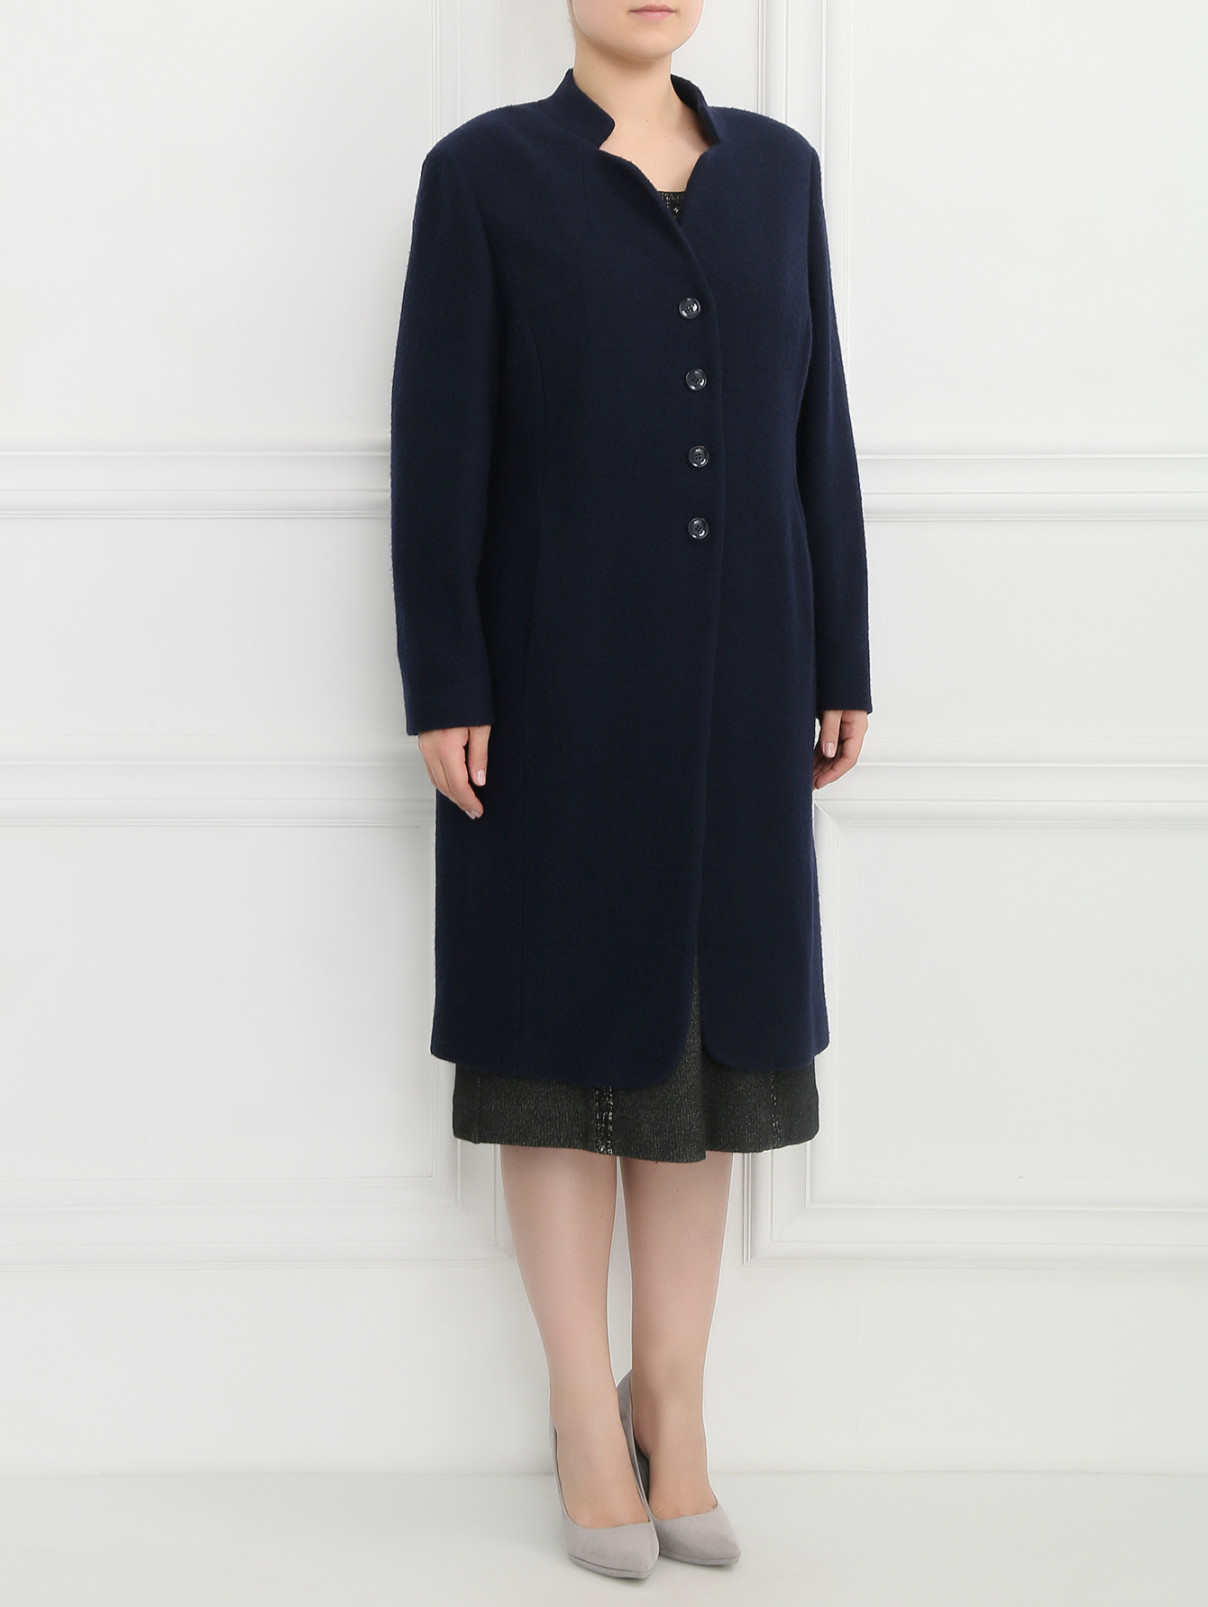 Пальто из шерсти Marina Rinaldi  –  Модель Общий вид  – Цвет:  Синий